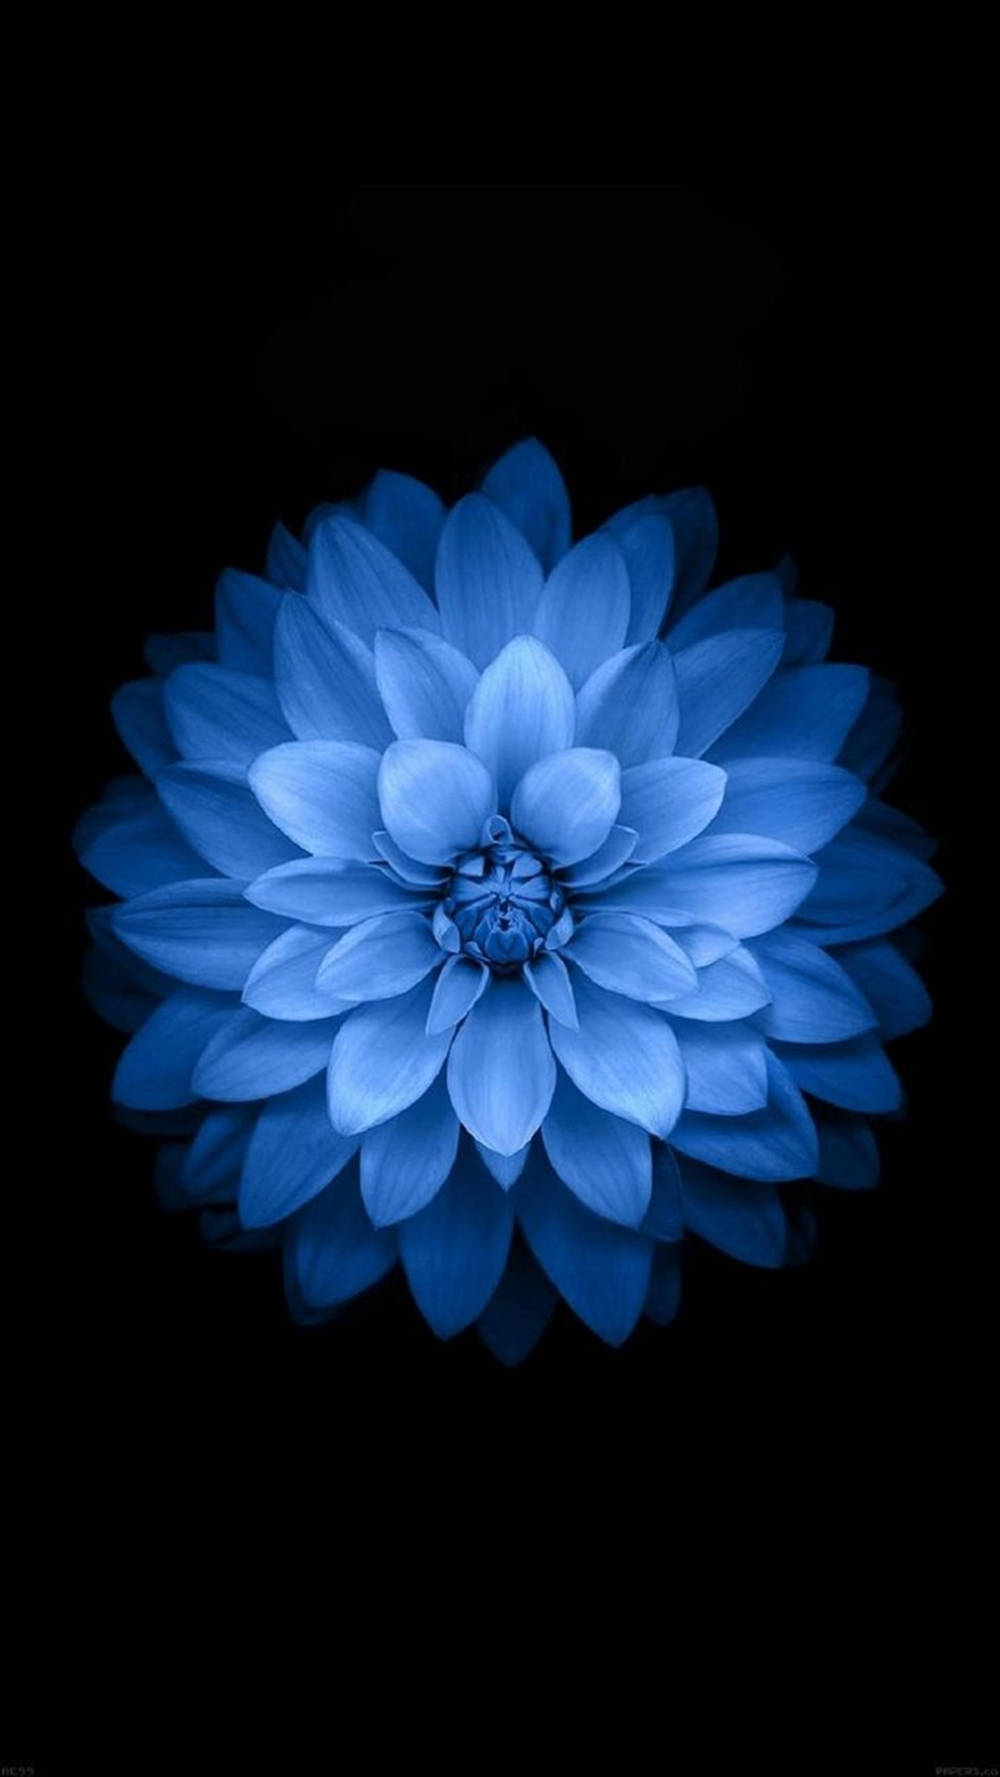 Trending Light Blue Dahlia Flower Picture